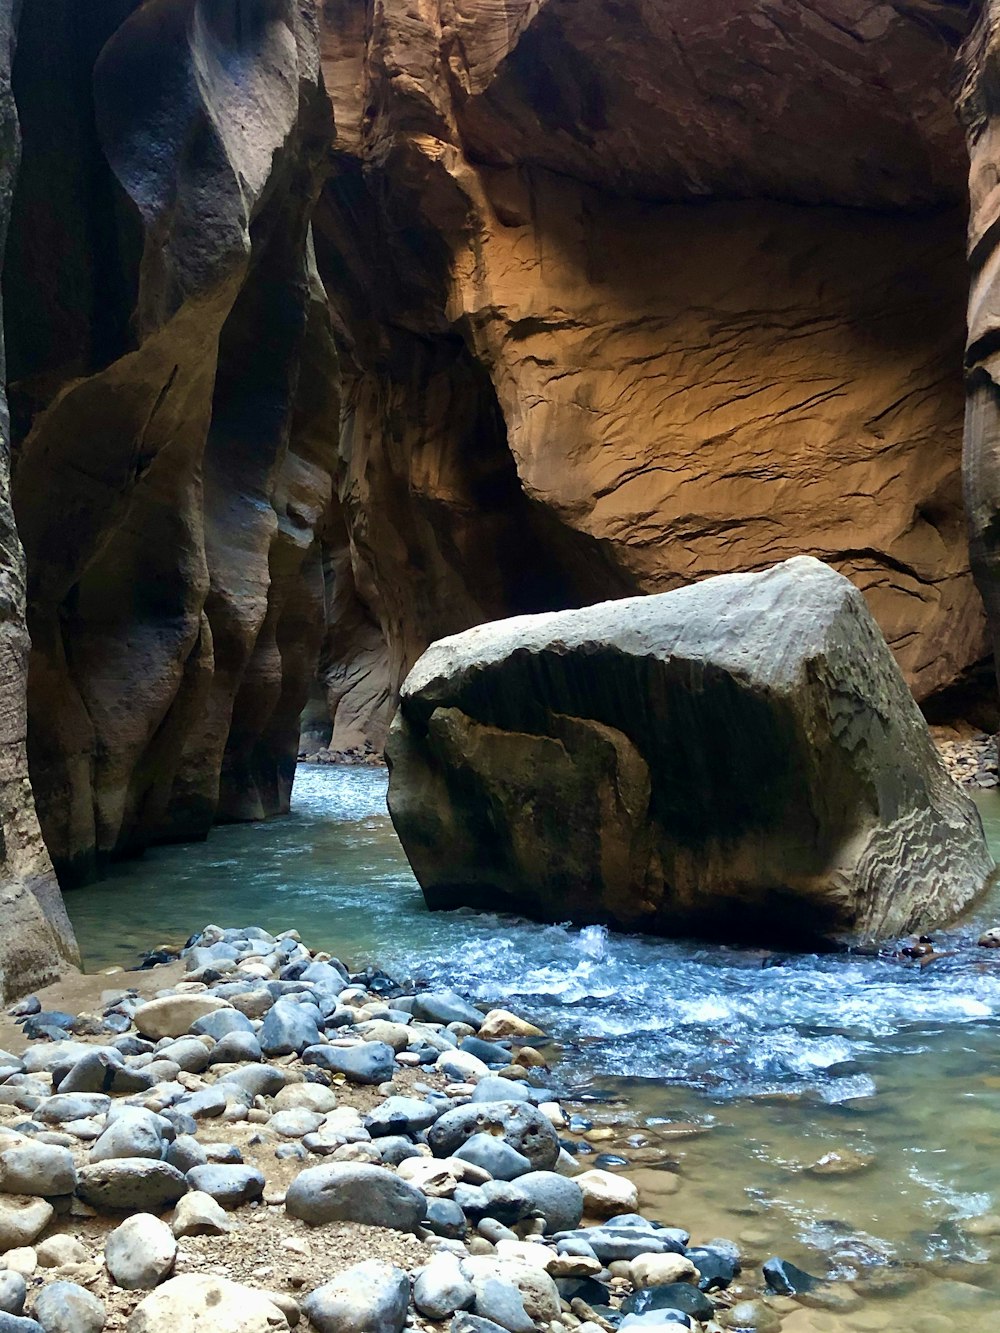 a river running through a narrow canyon next to rocks